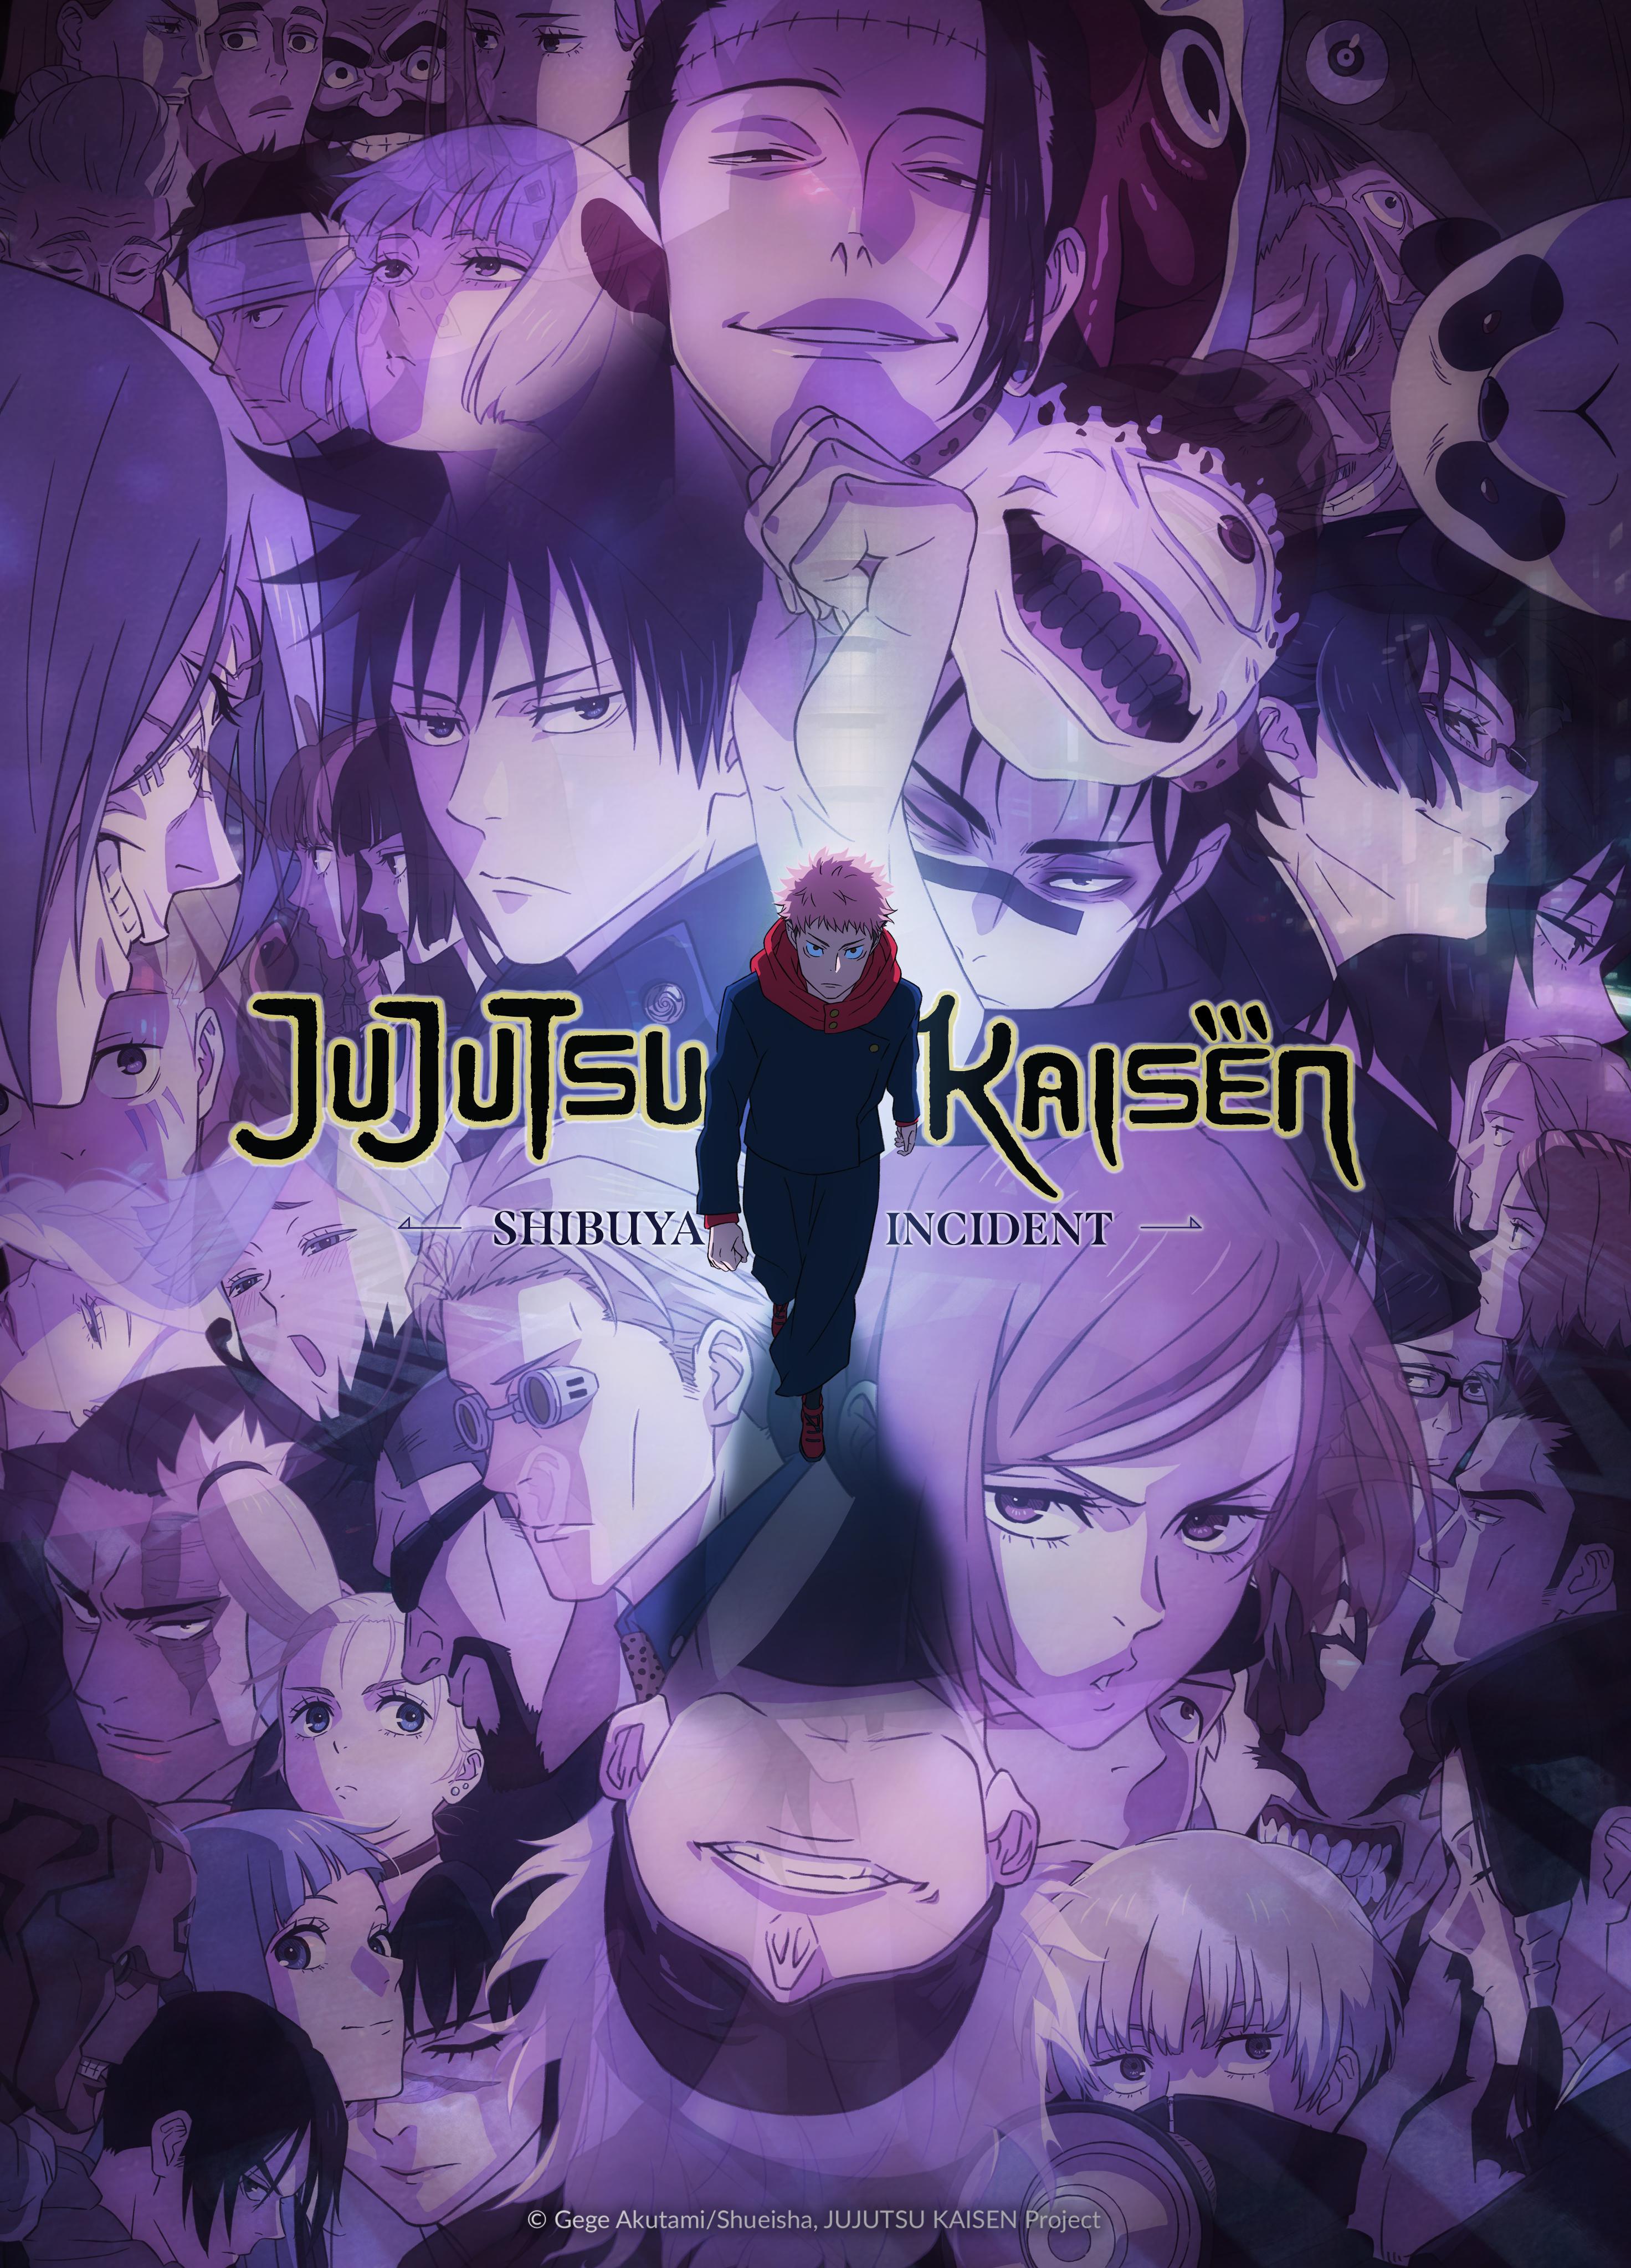 Name: Jujutsu Kaisen Ep:22 Streams On Crunchyroll] It's nice to